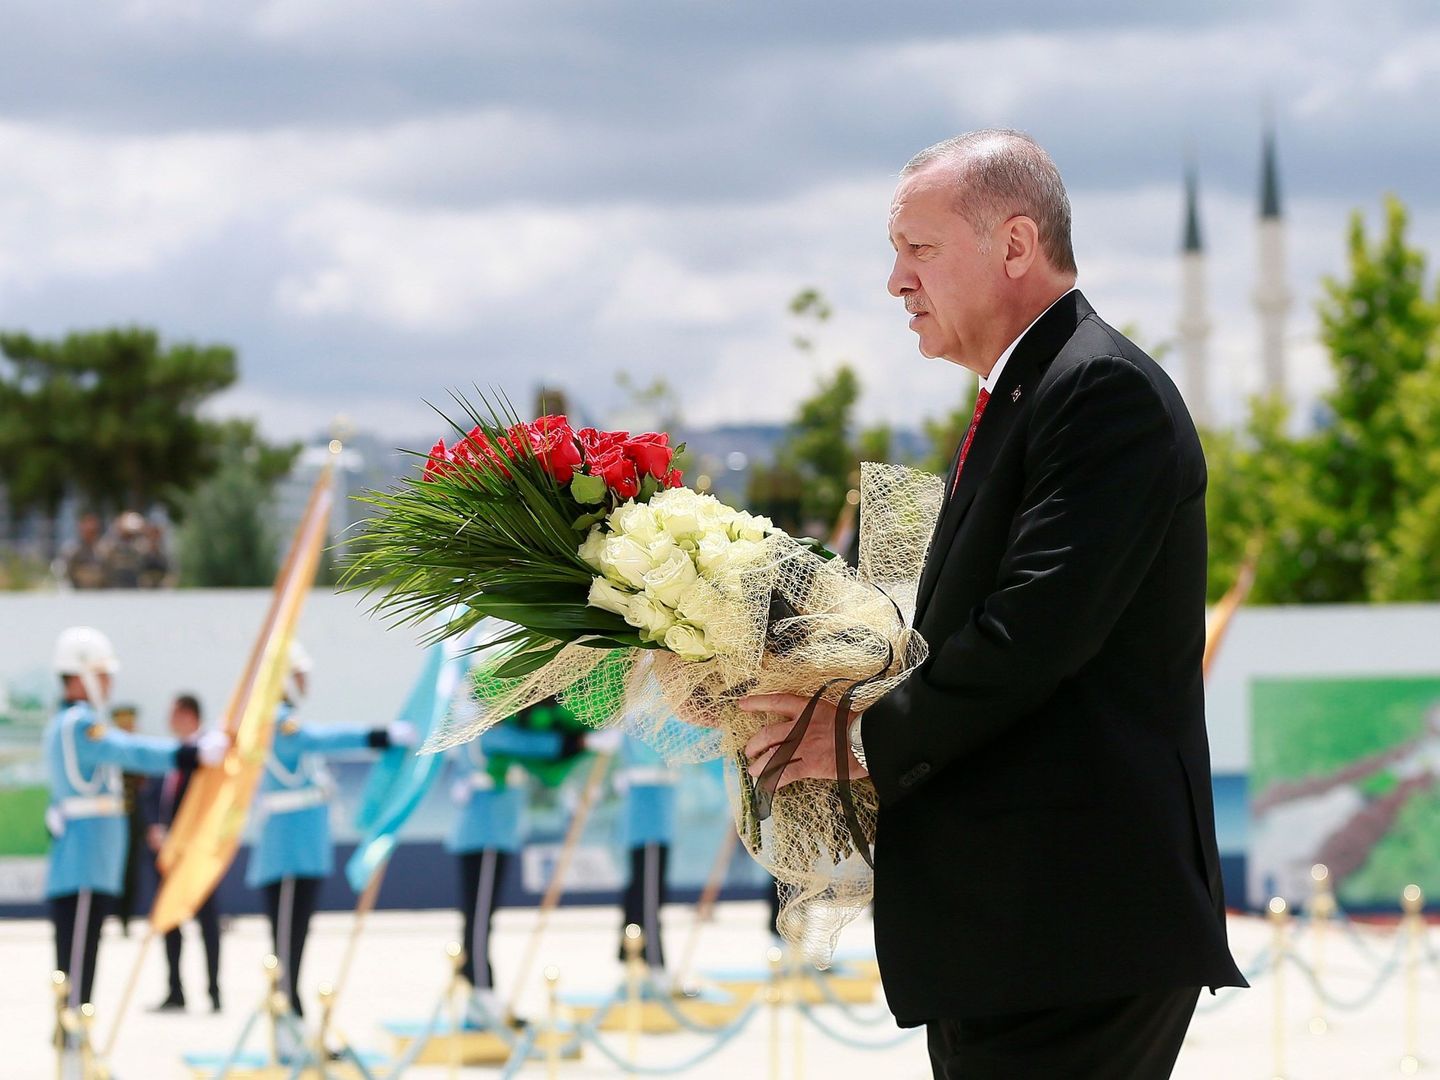 El presidente turco Recep Tayyip Erdogan visita el memorial en honor de las víctimas del 15 de julio cuando se cumple el tercer aniversario. (Reuters)